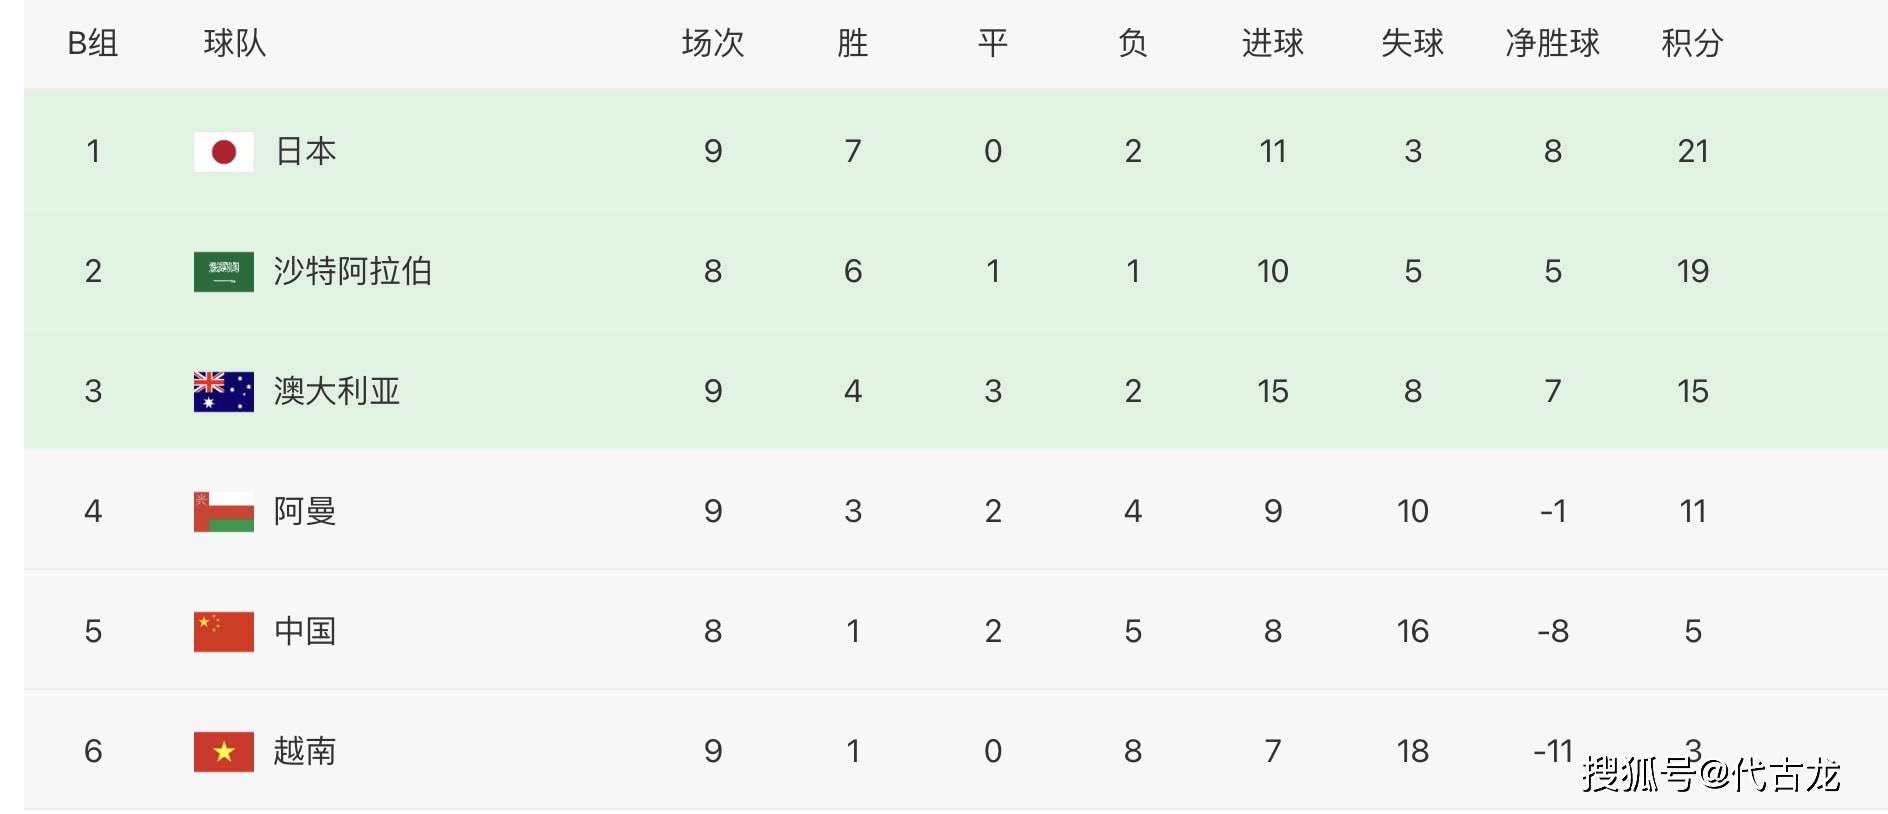 比赛|越南0-1阿曼，中国队再收利好，战沙特无压力，小组垫底概率减小